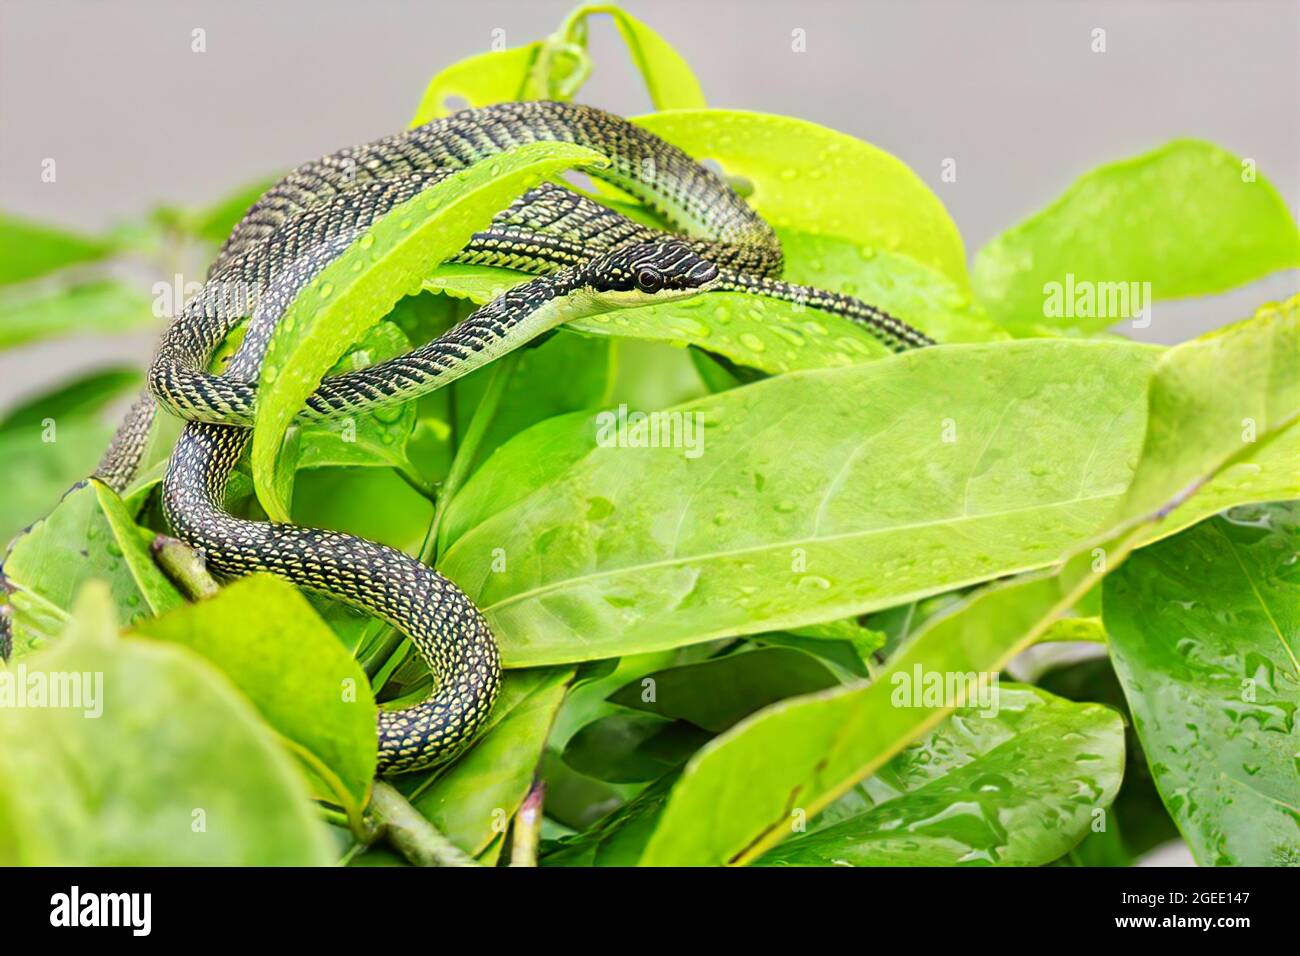 Indra's green snake (golden tree snake,ornate flying snake, golden flying snake ) on a fresh green leaf Stock Photo